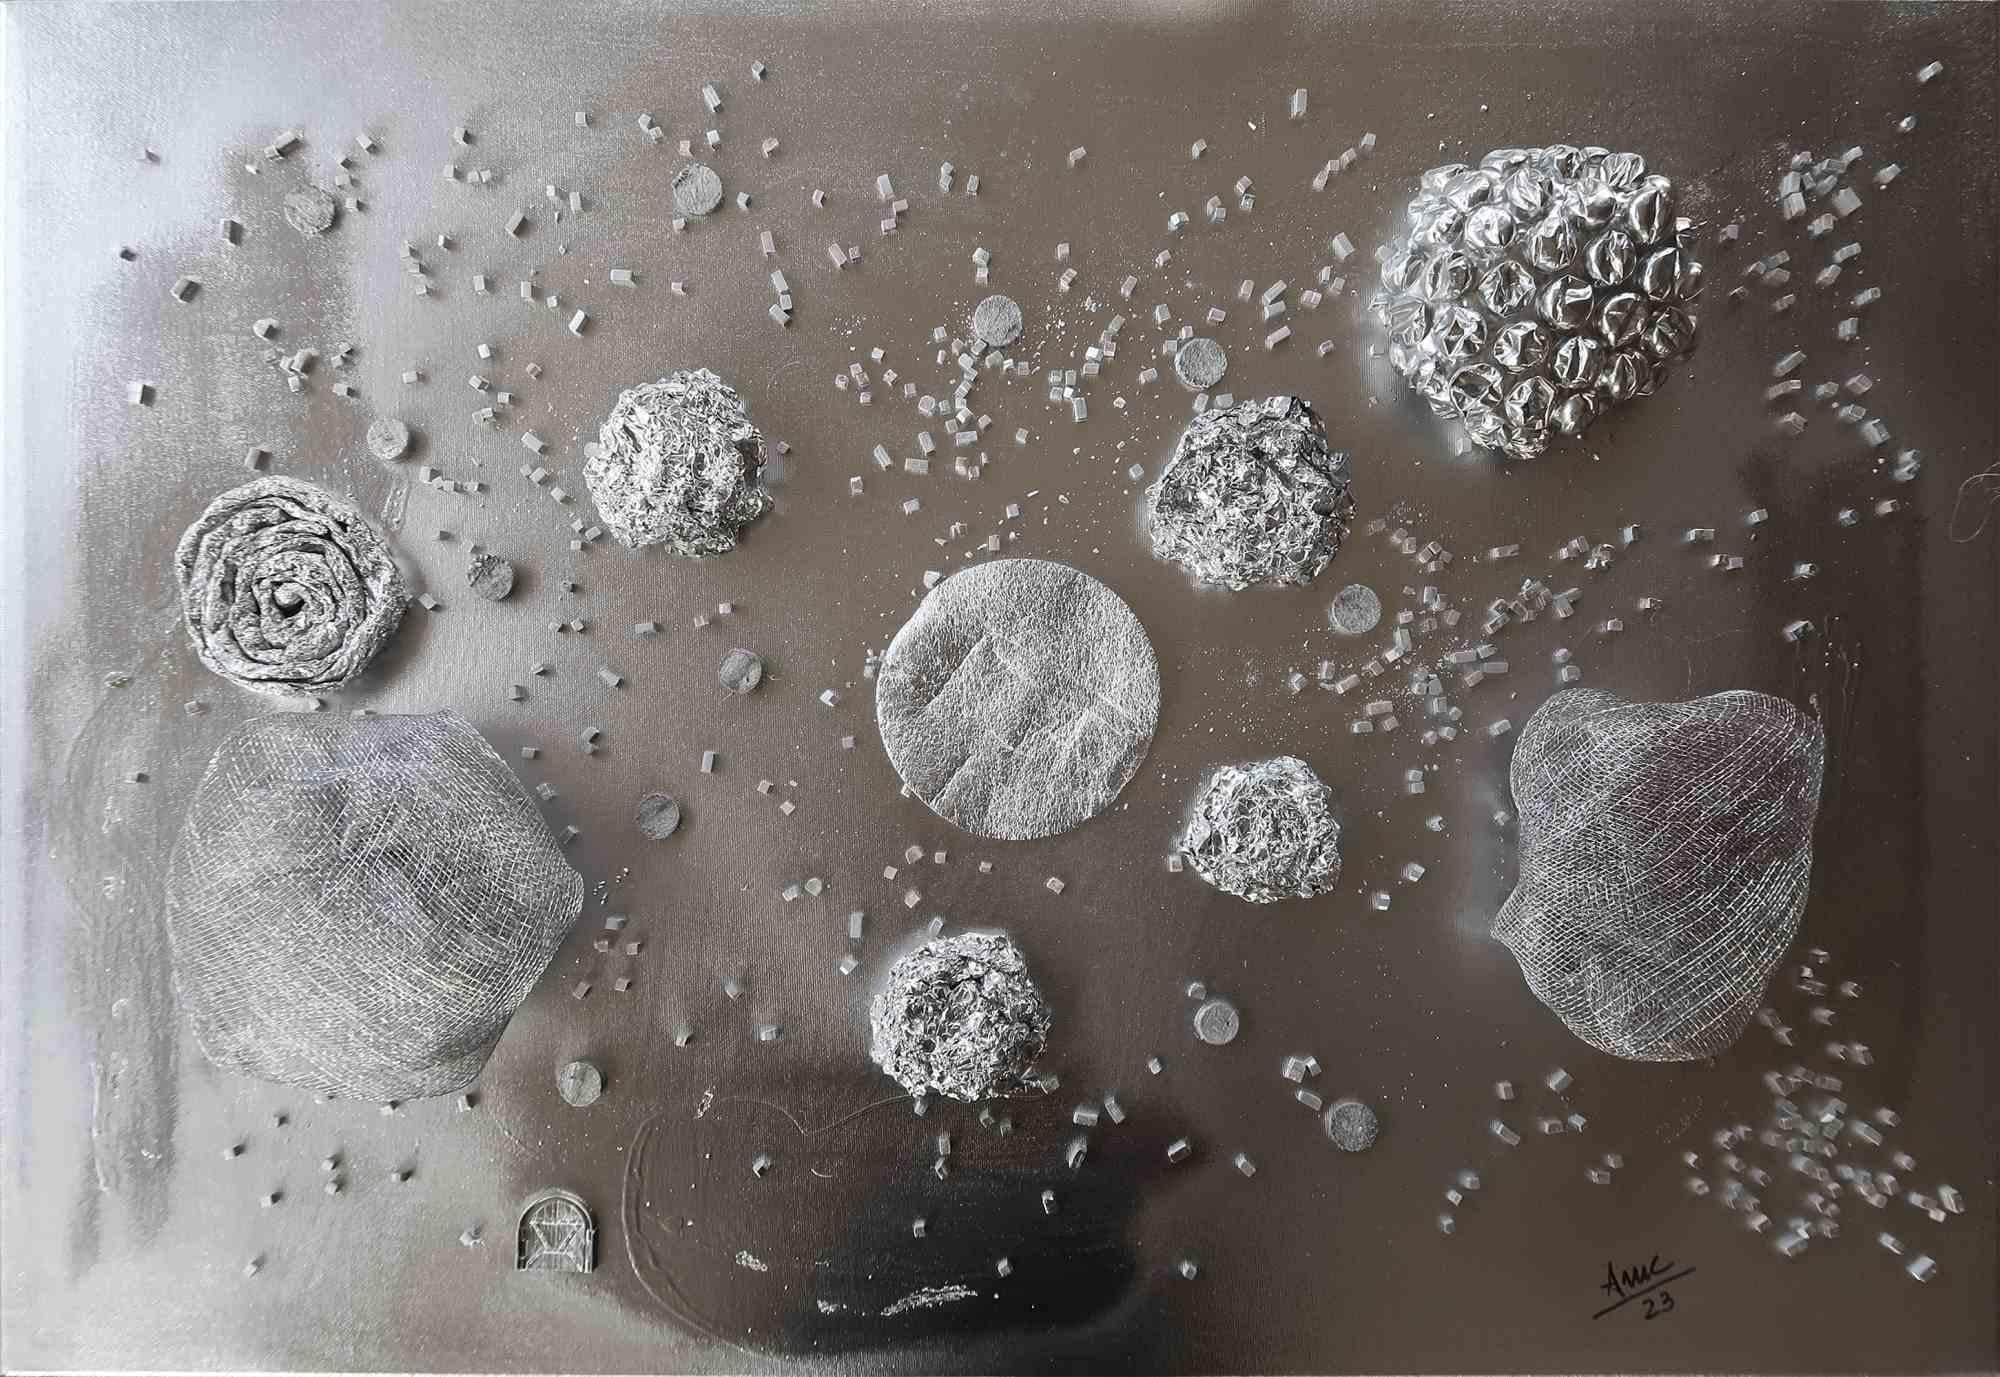 Qu'est-ce que l'univers ? Un millier de millions de lunes écrasantes. Come In. est une peinture fascinante de l'artiste italienne Anna Maria Caboni.

Il représente une version métallique d'une galaxie avec une petite porte ouvrant sur l'infini. La